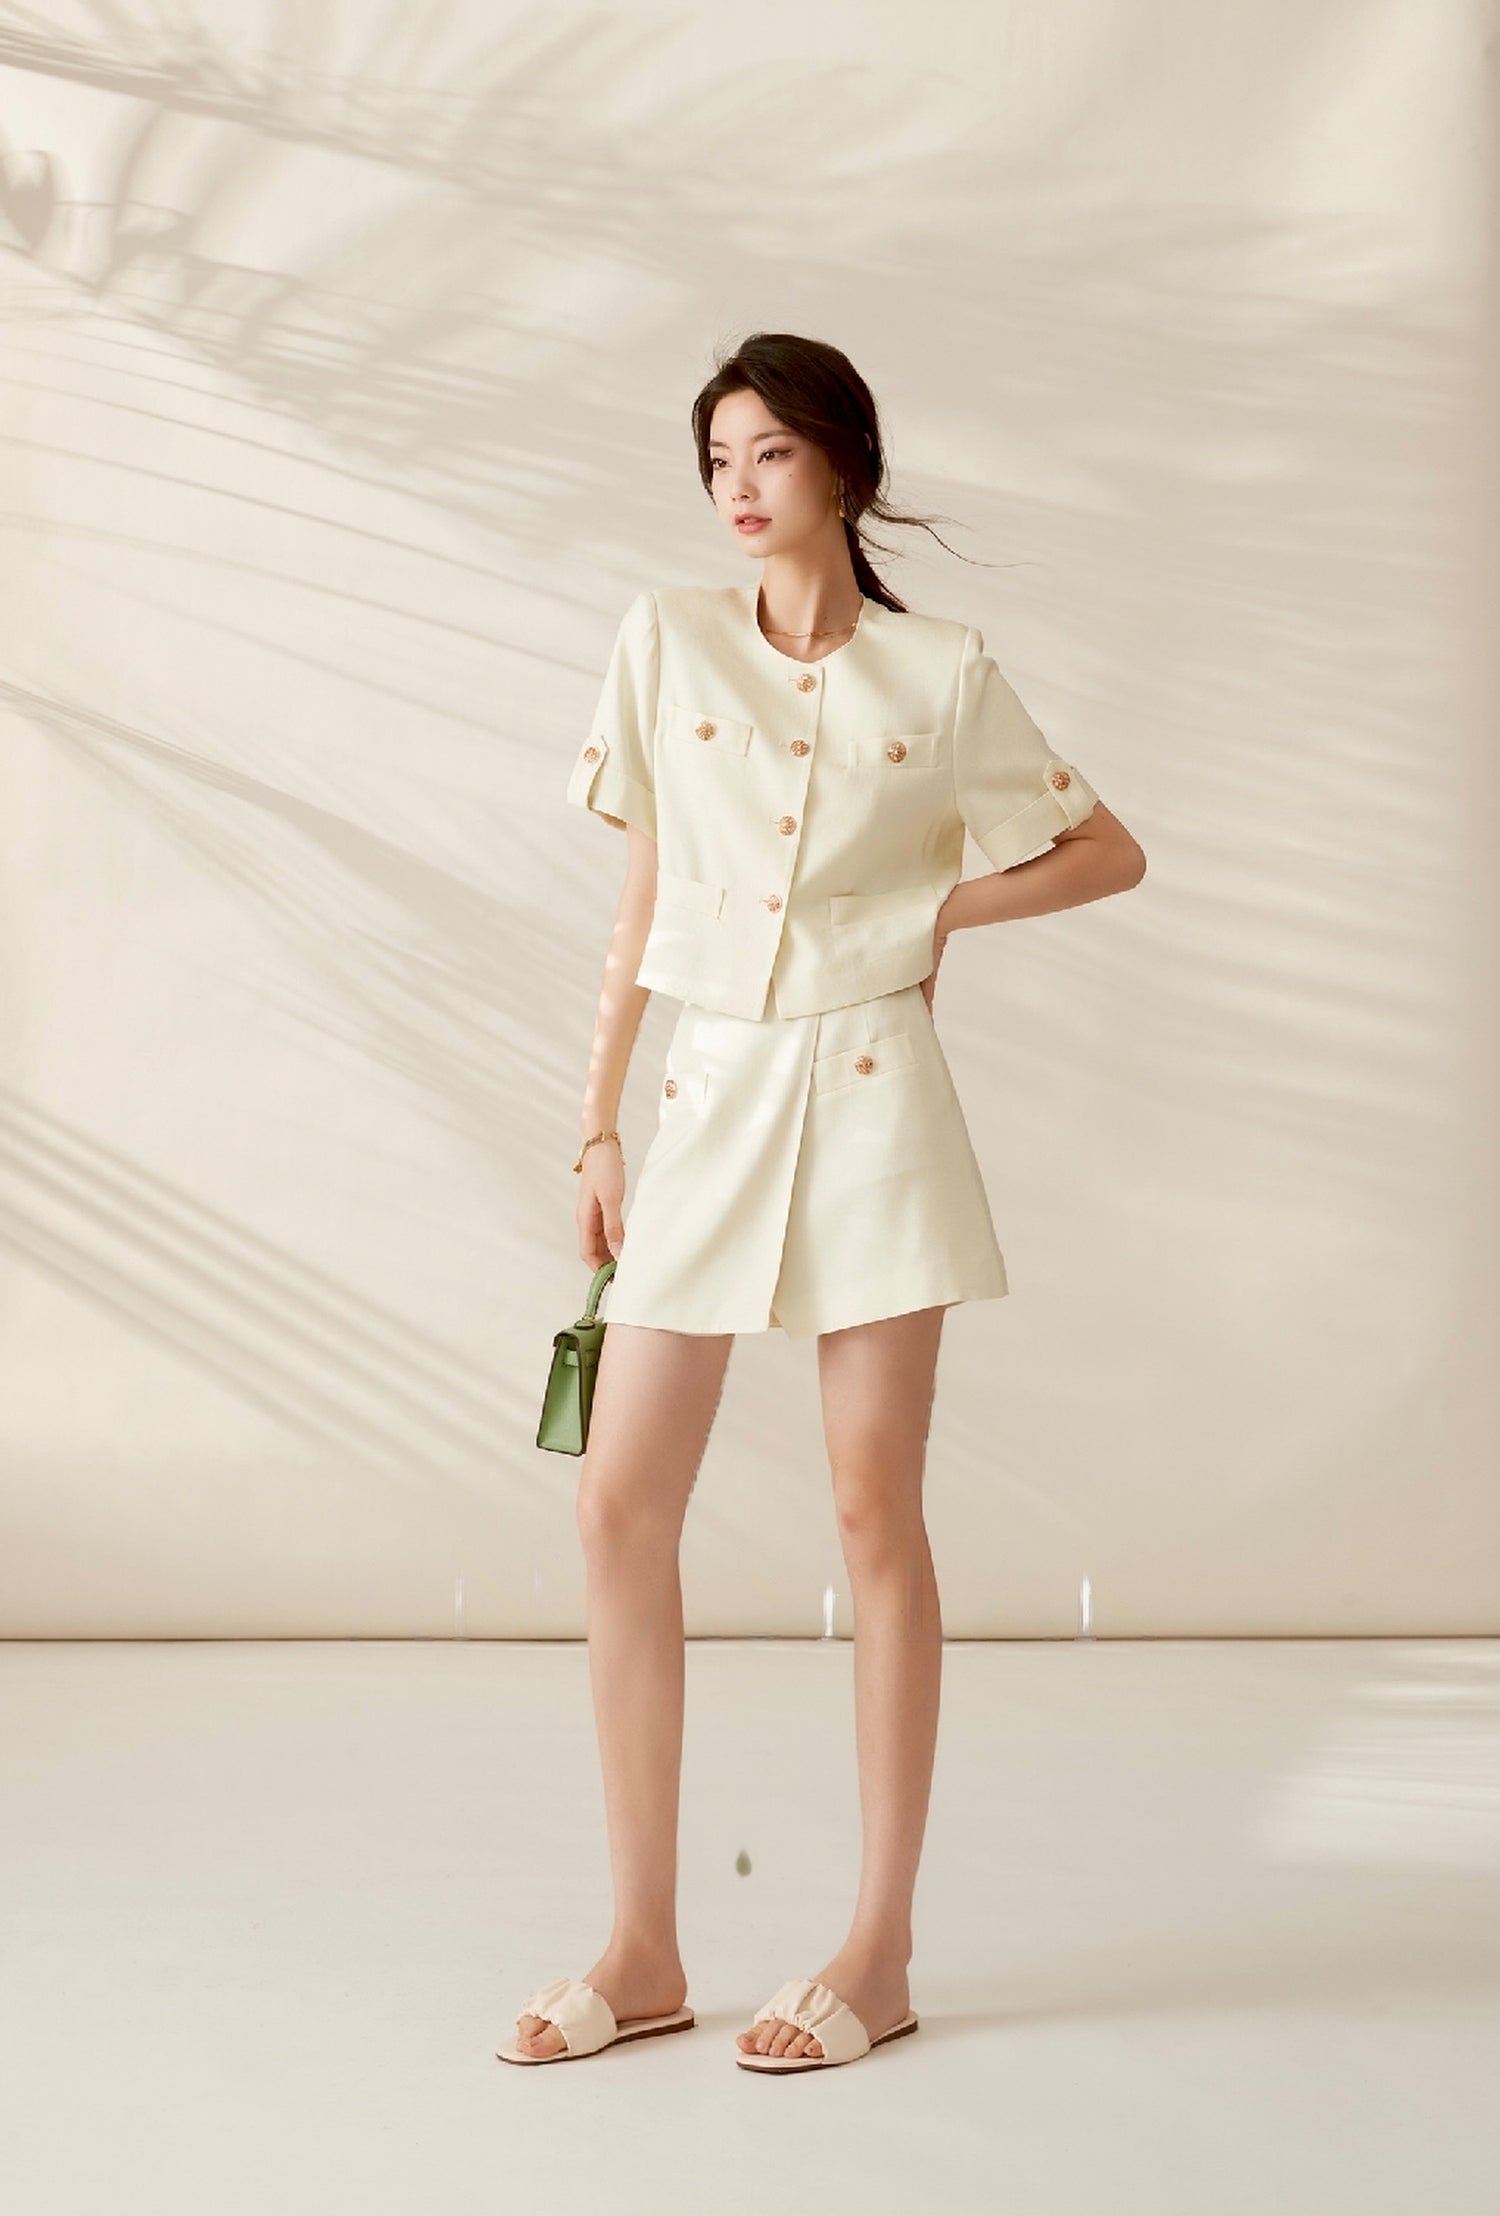 韓国ファッション SELCA-カラーセットアップパンツ-2023ss-pt-22-016